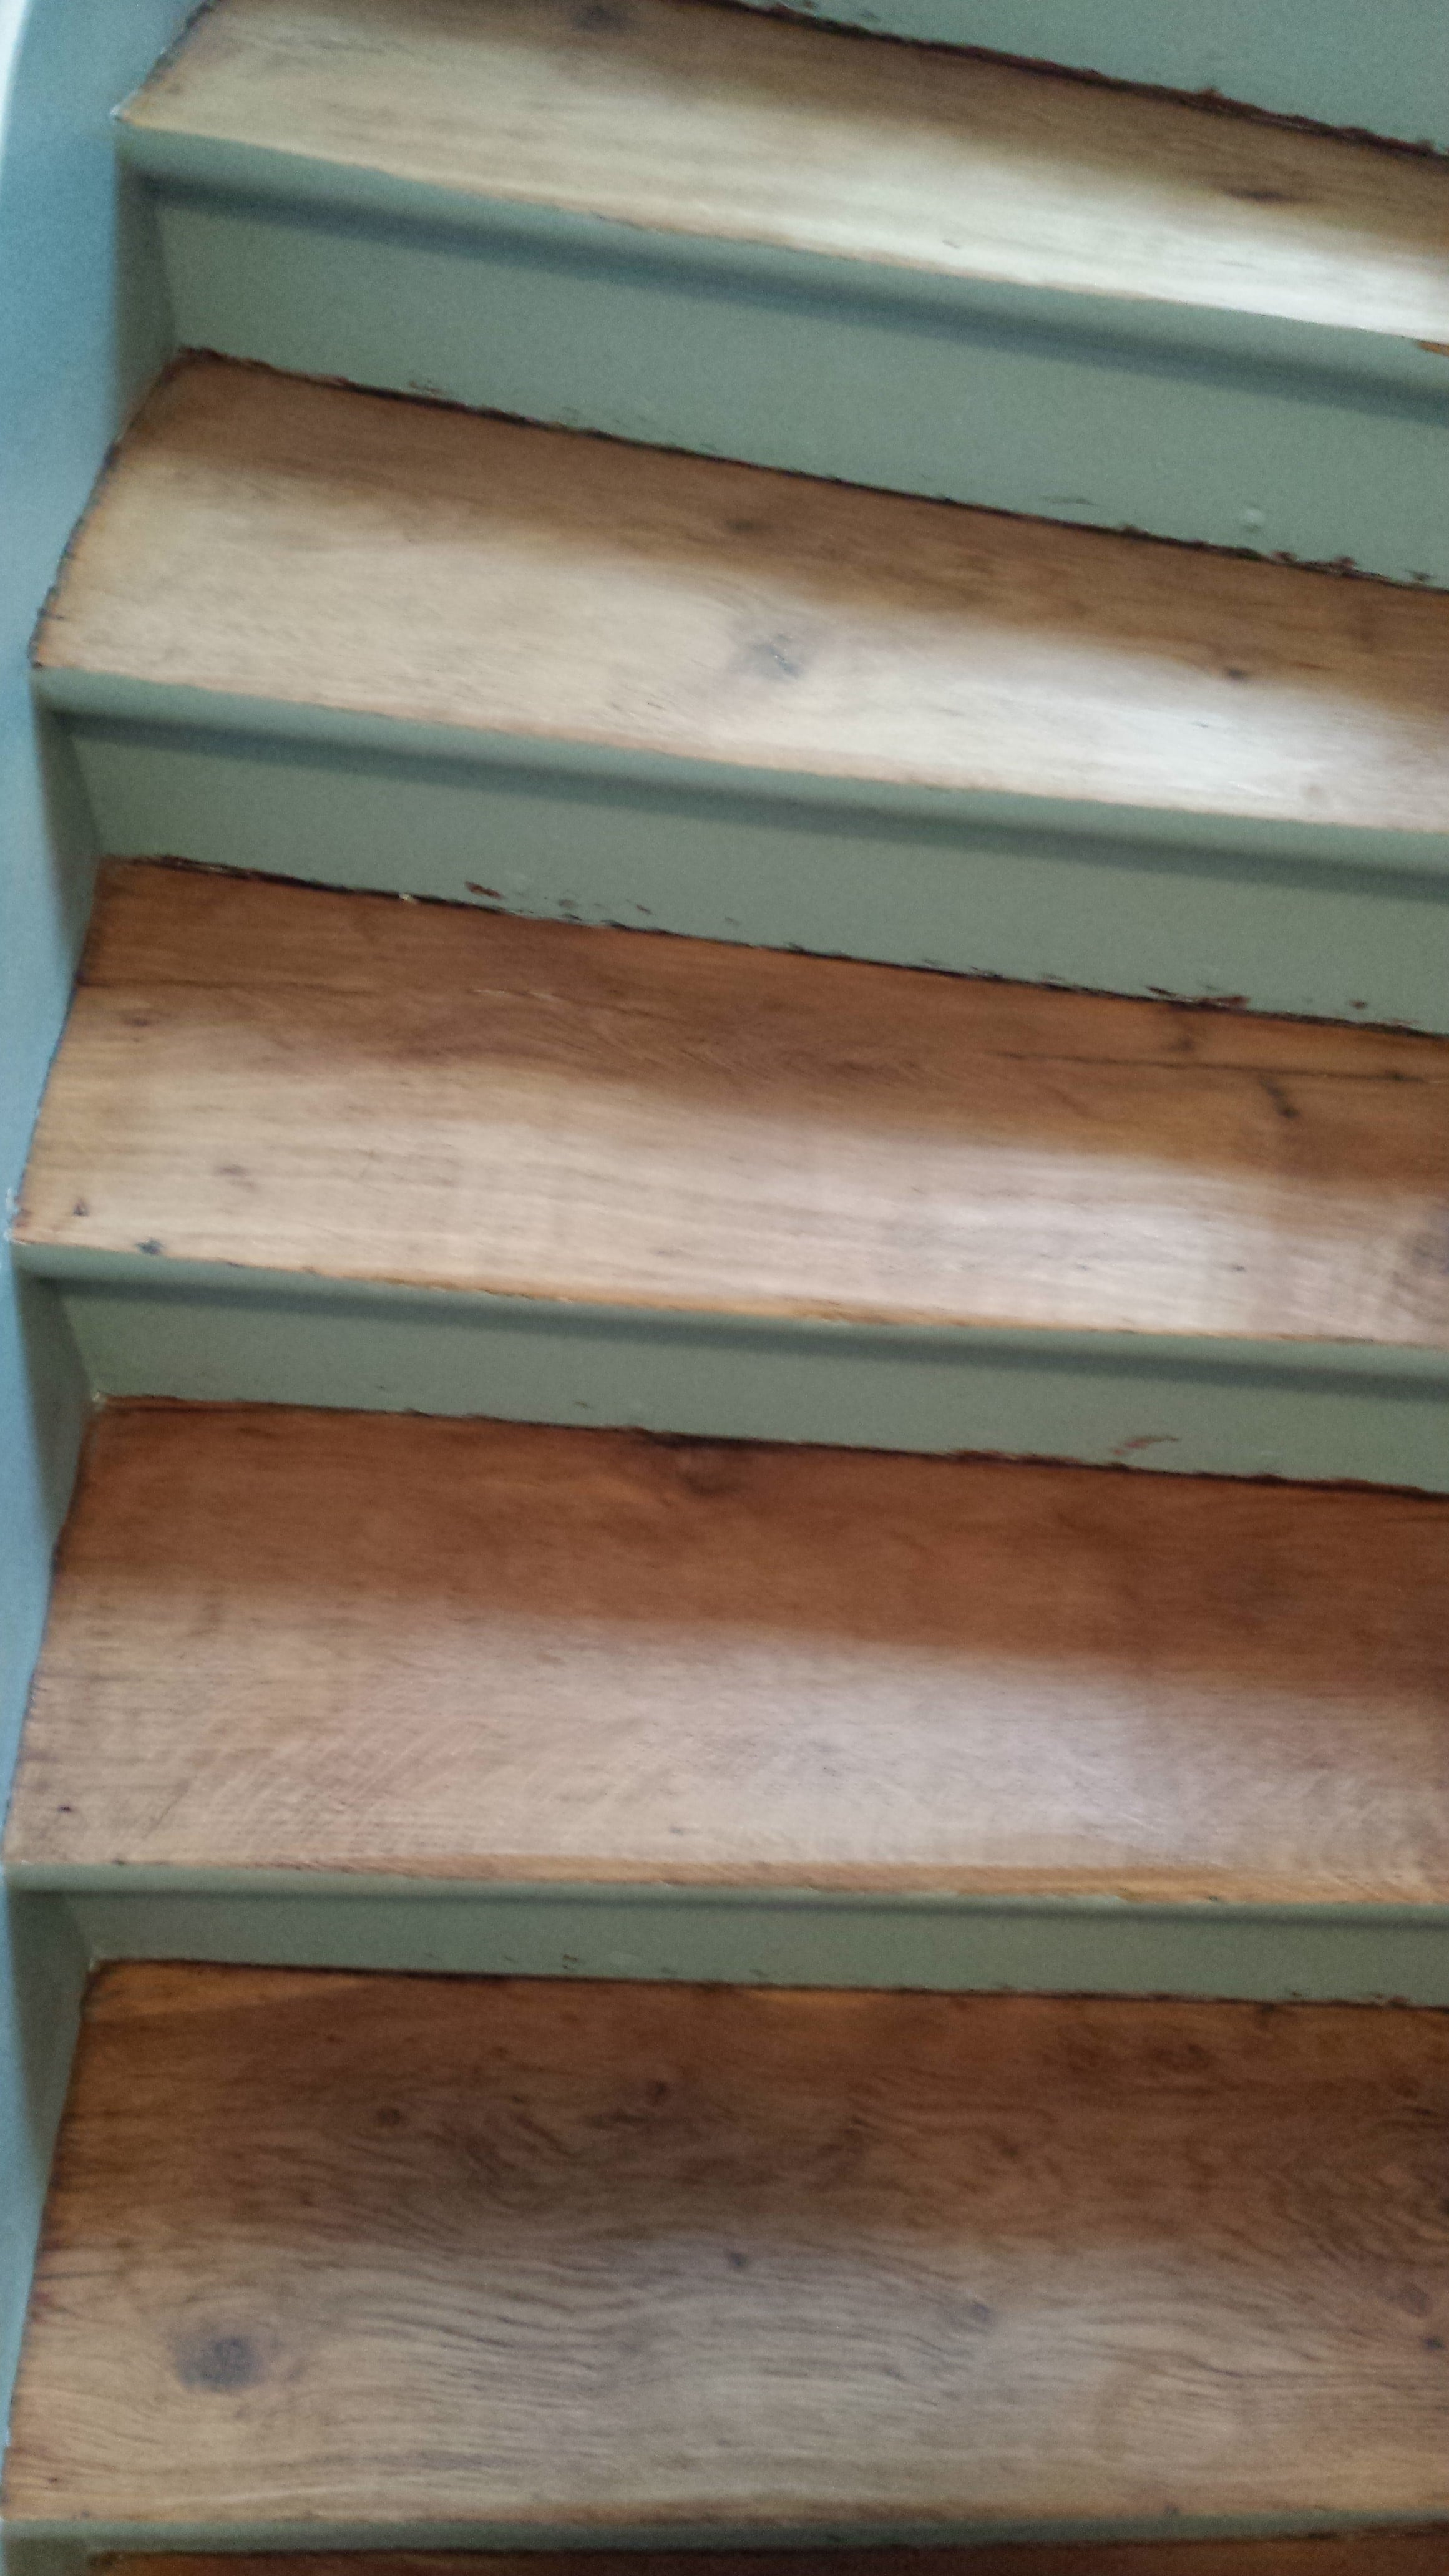 travaux-renovation-escalier-poncage-verni-immeuble-de-paris-2-texas-batiment-rge-min